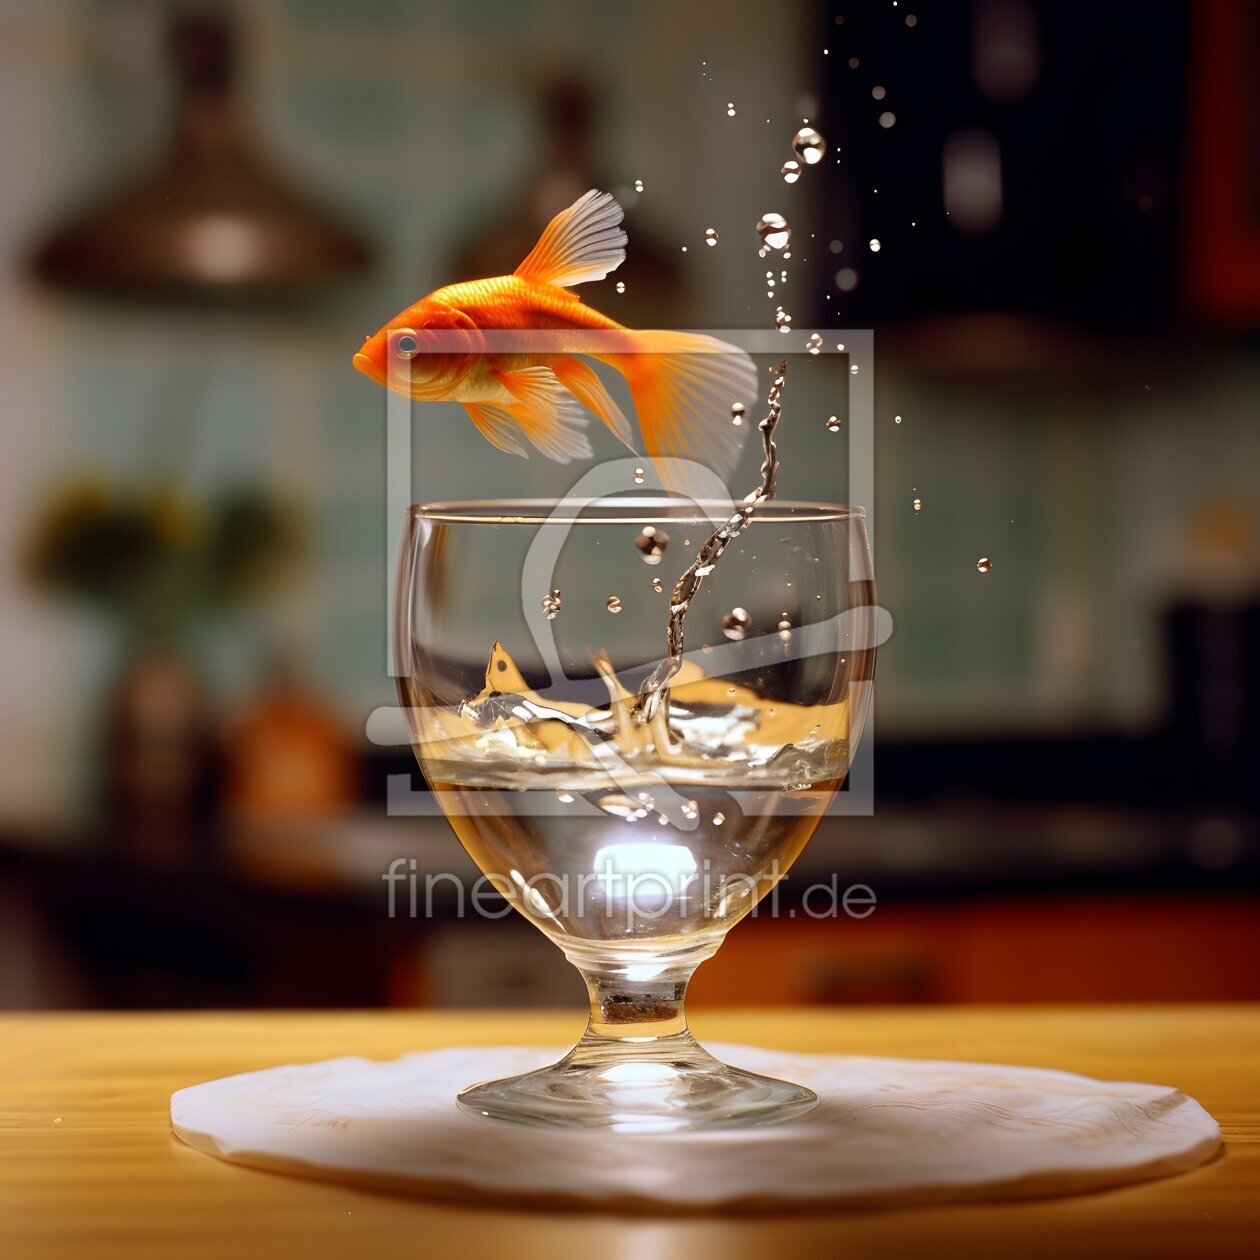 Bild-Nr.: 12738650 Die Flucht des Goldfisches erstellt von Heike  Hultsch